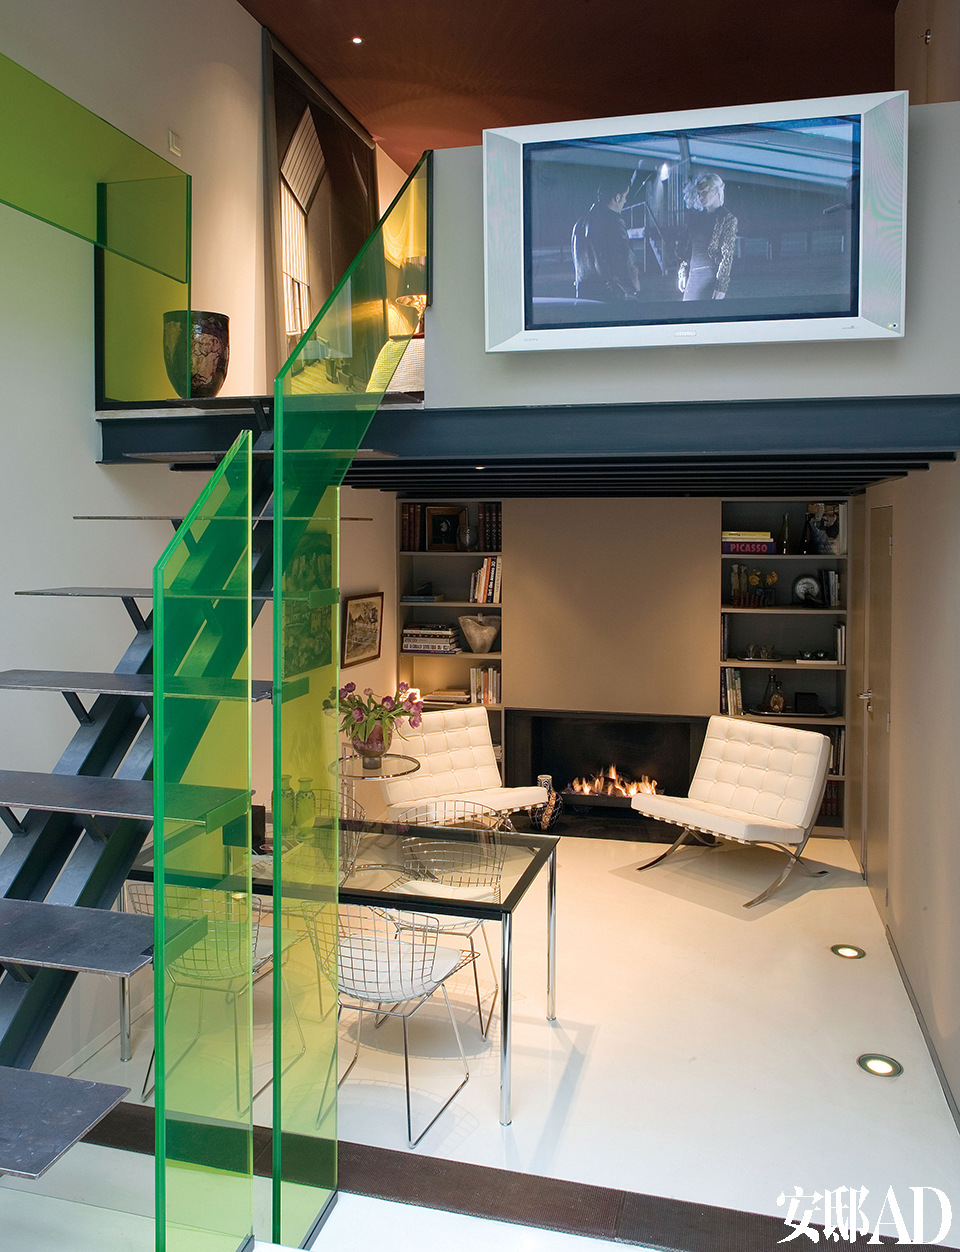 金属楼梯的每一级台阶都由钢条铺设，绿色玻璃扶手成为整个家的点睛之笔。两把白色巴塞罗那扶手椅与壁炉搭配成一个温暖的阅读区。从楼梯拾级而上，就是夹层卧室。夹层上的镀锌的陶罐来自Domani。